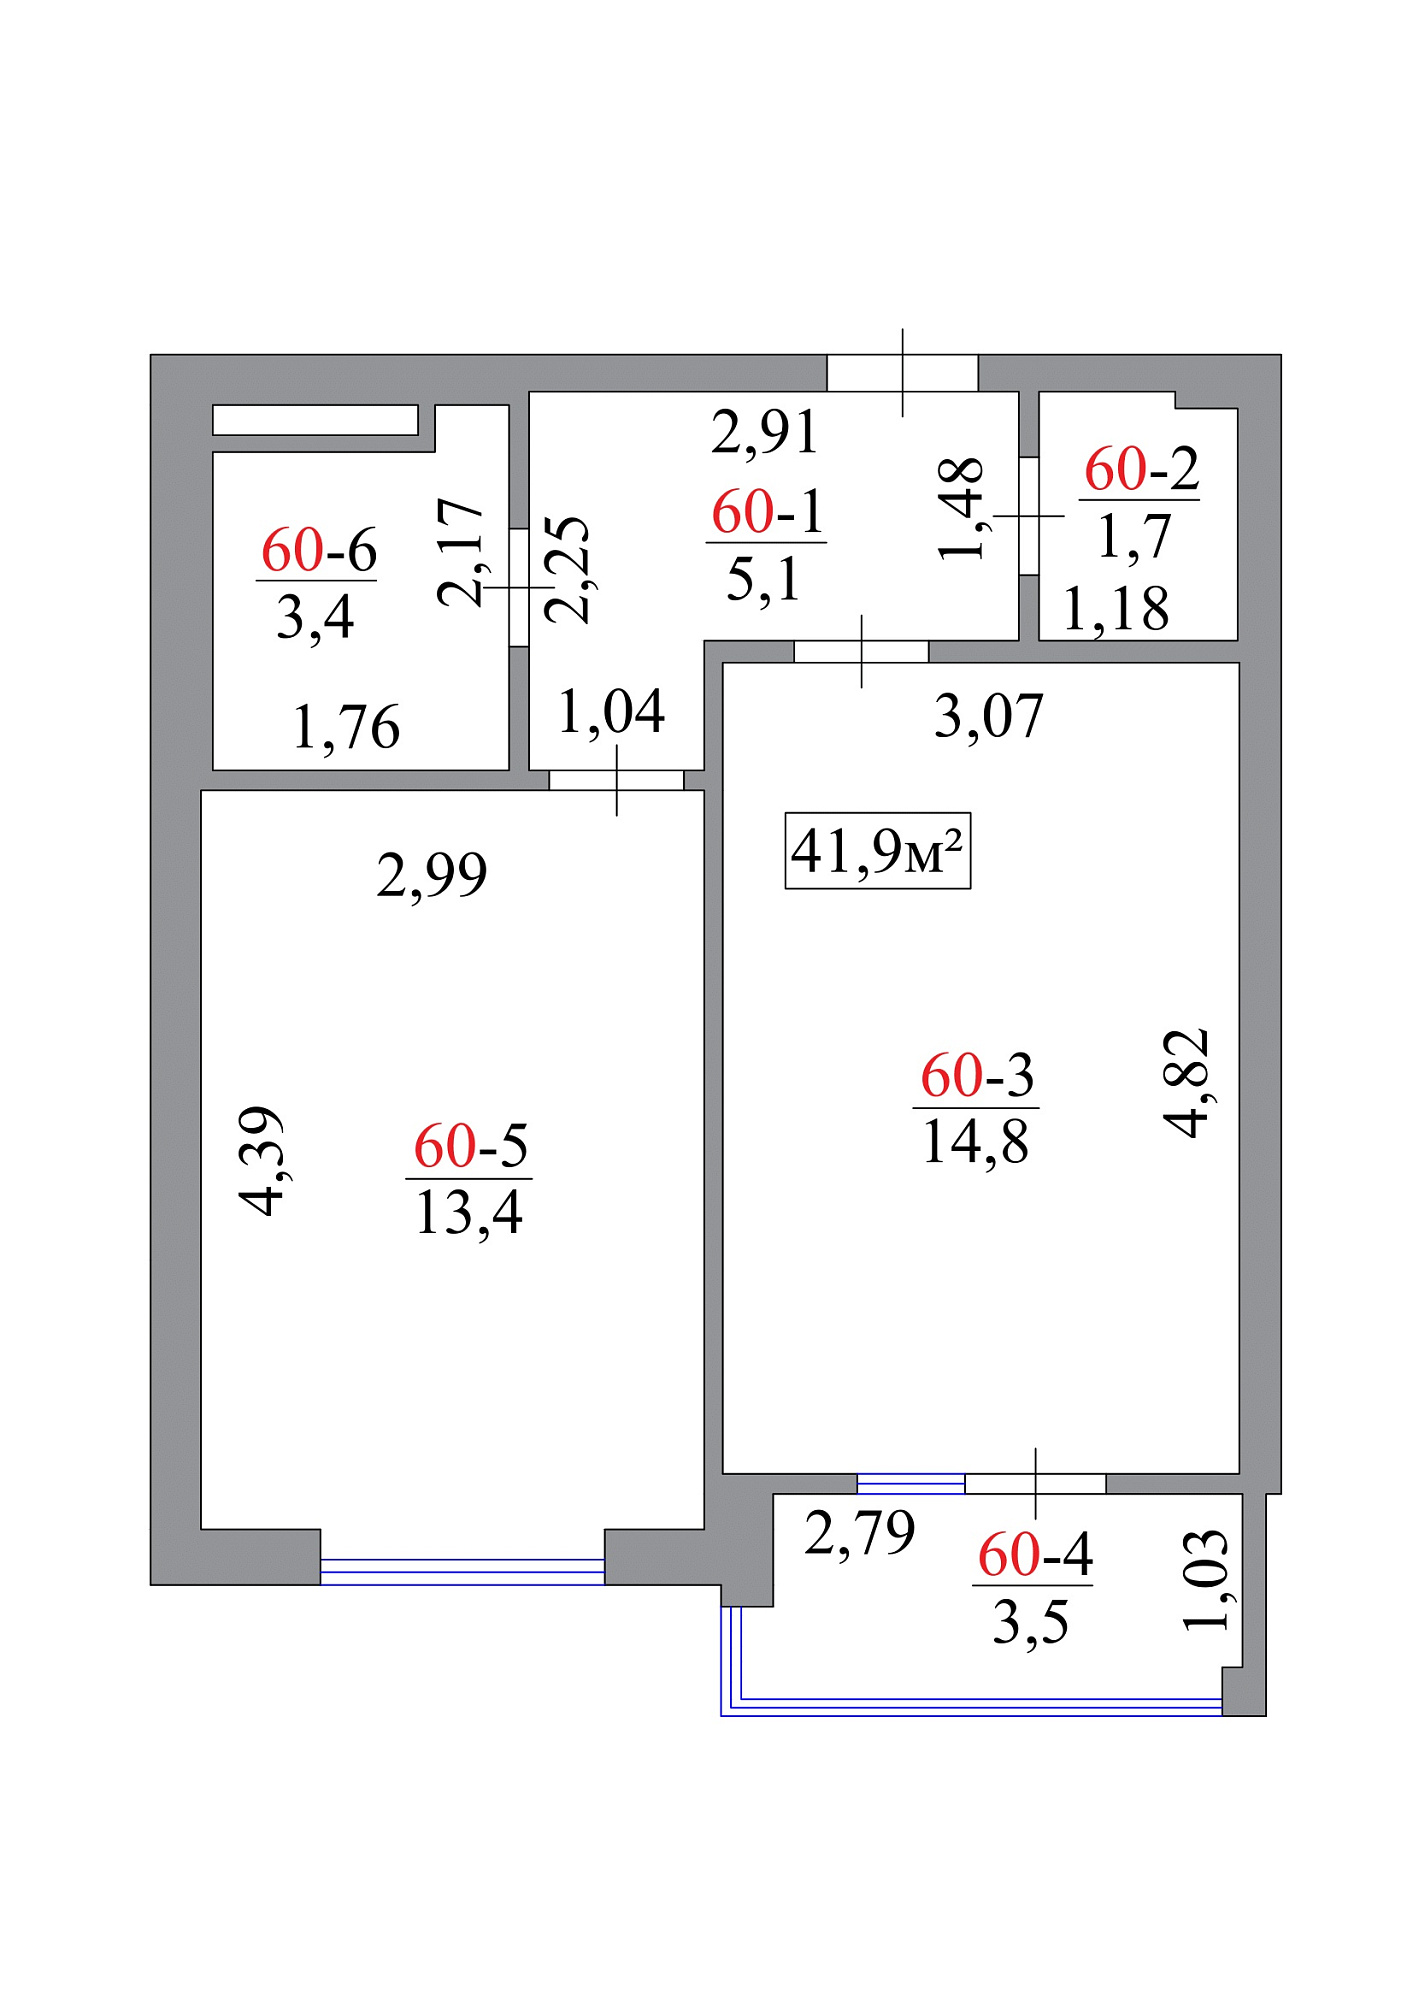 Планировка 1-к квартира площей 41.9м2, AB-07-06/00054.